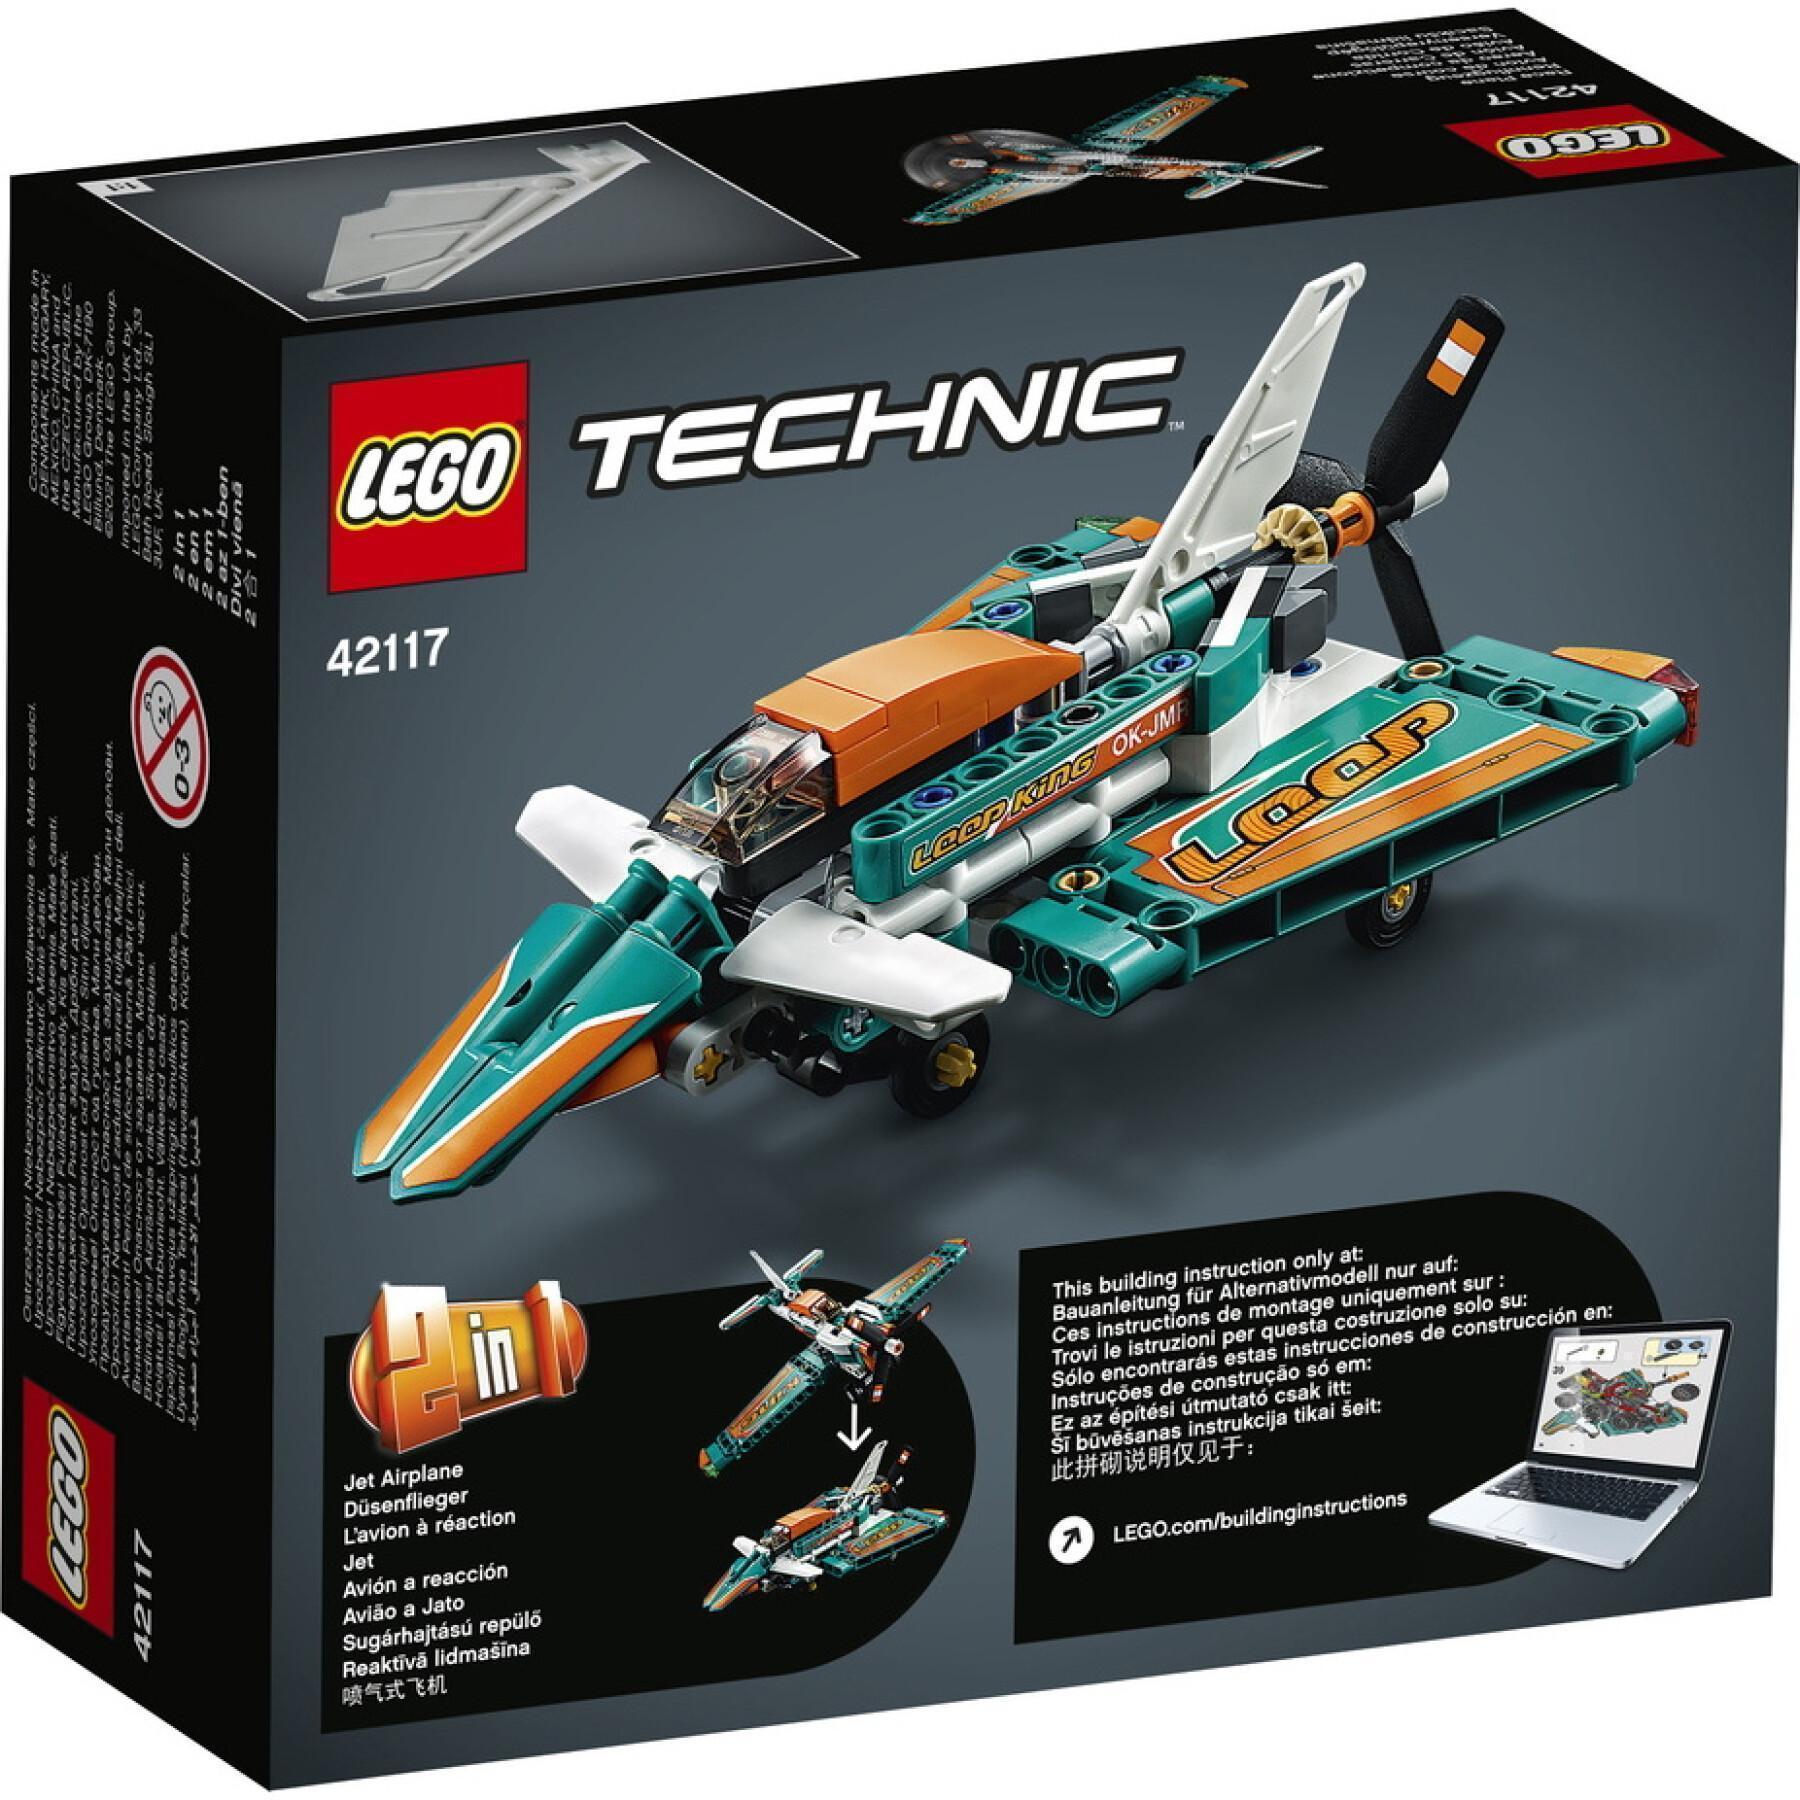 Aereo da corsa Lego Technic